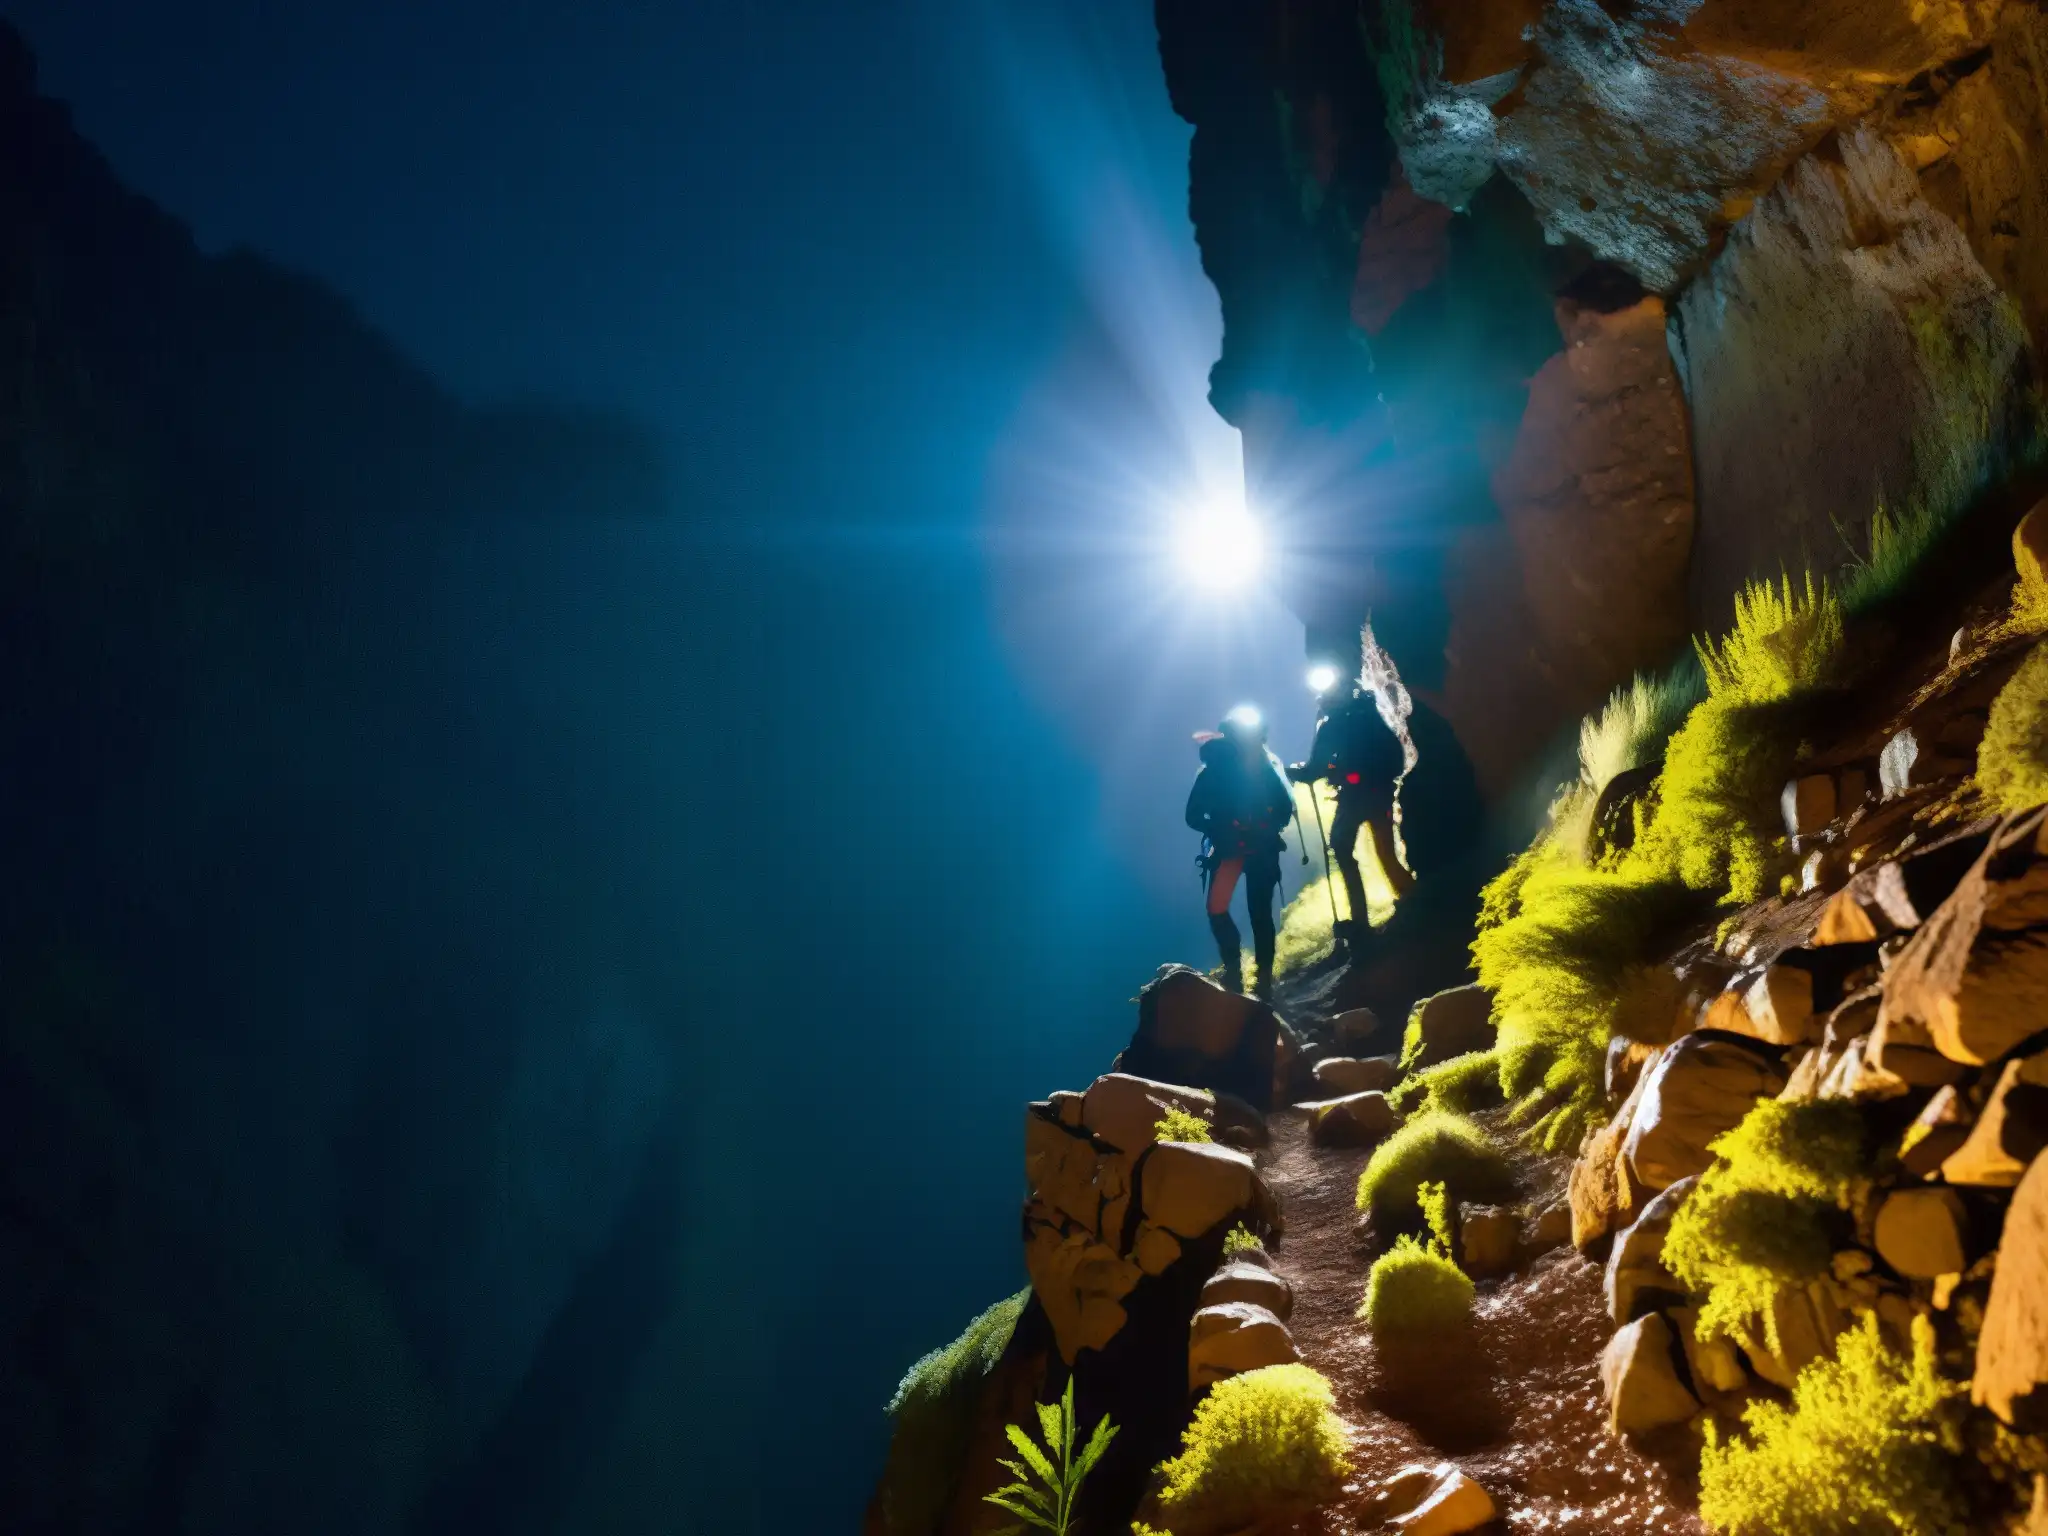 Exploradores con linternas y equipo escalan pasaje estrecho en Cerro de la Bufa Zacatecas, revelando misteriosas cuevas iluminadas